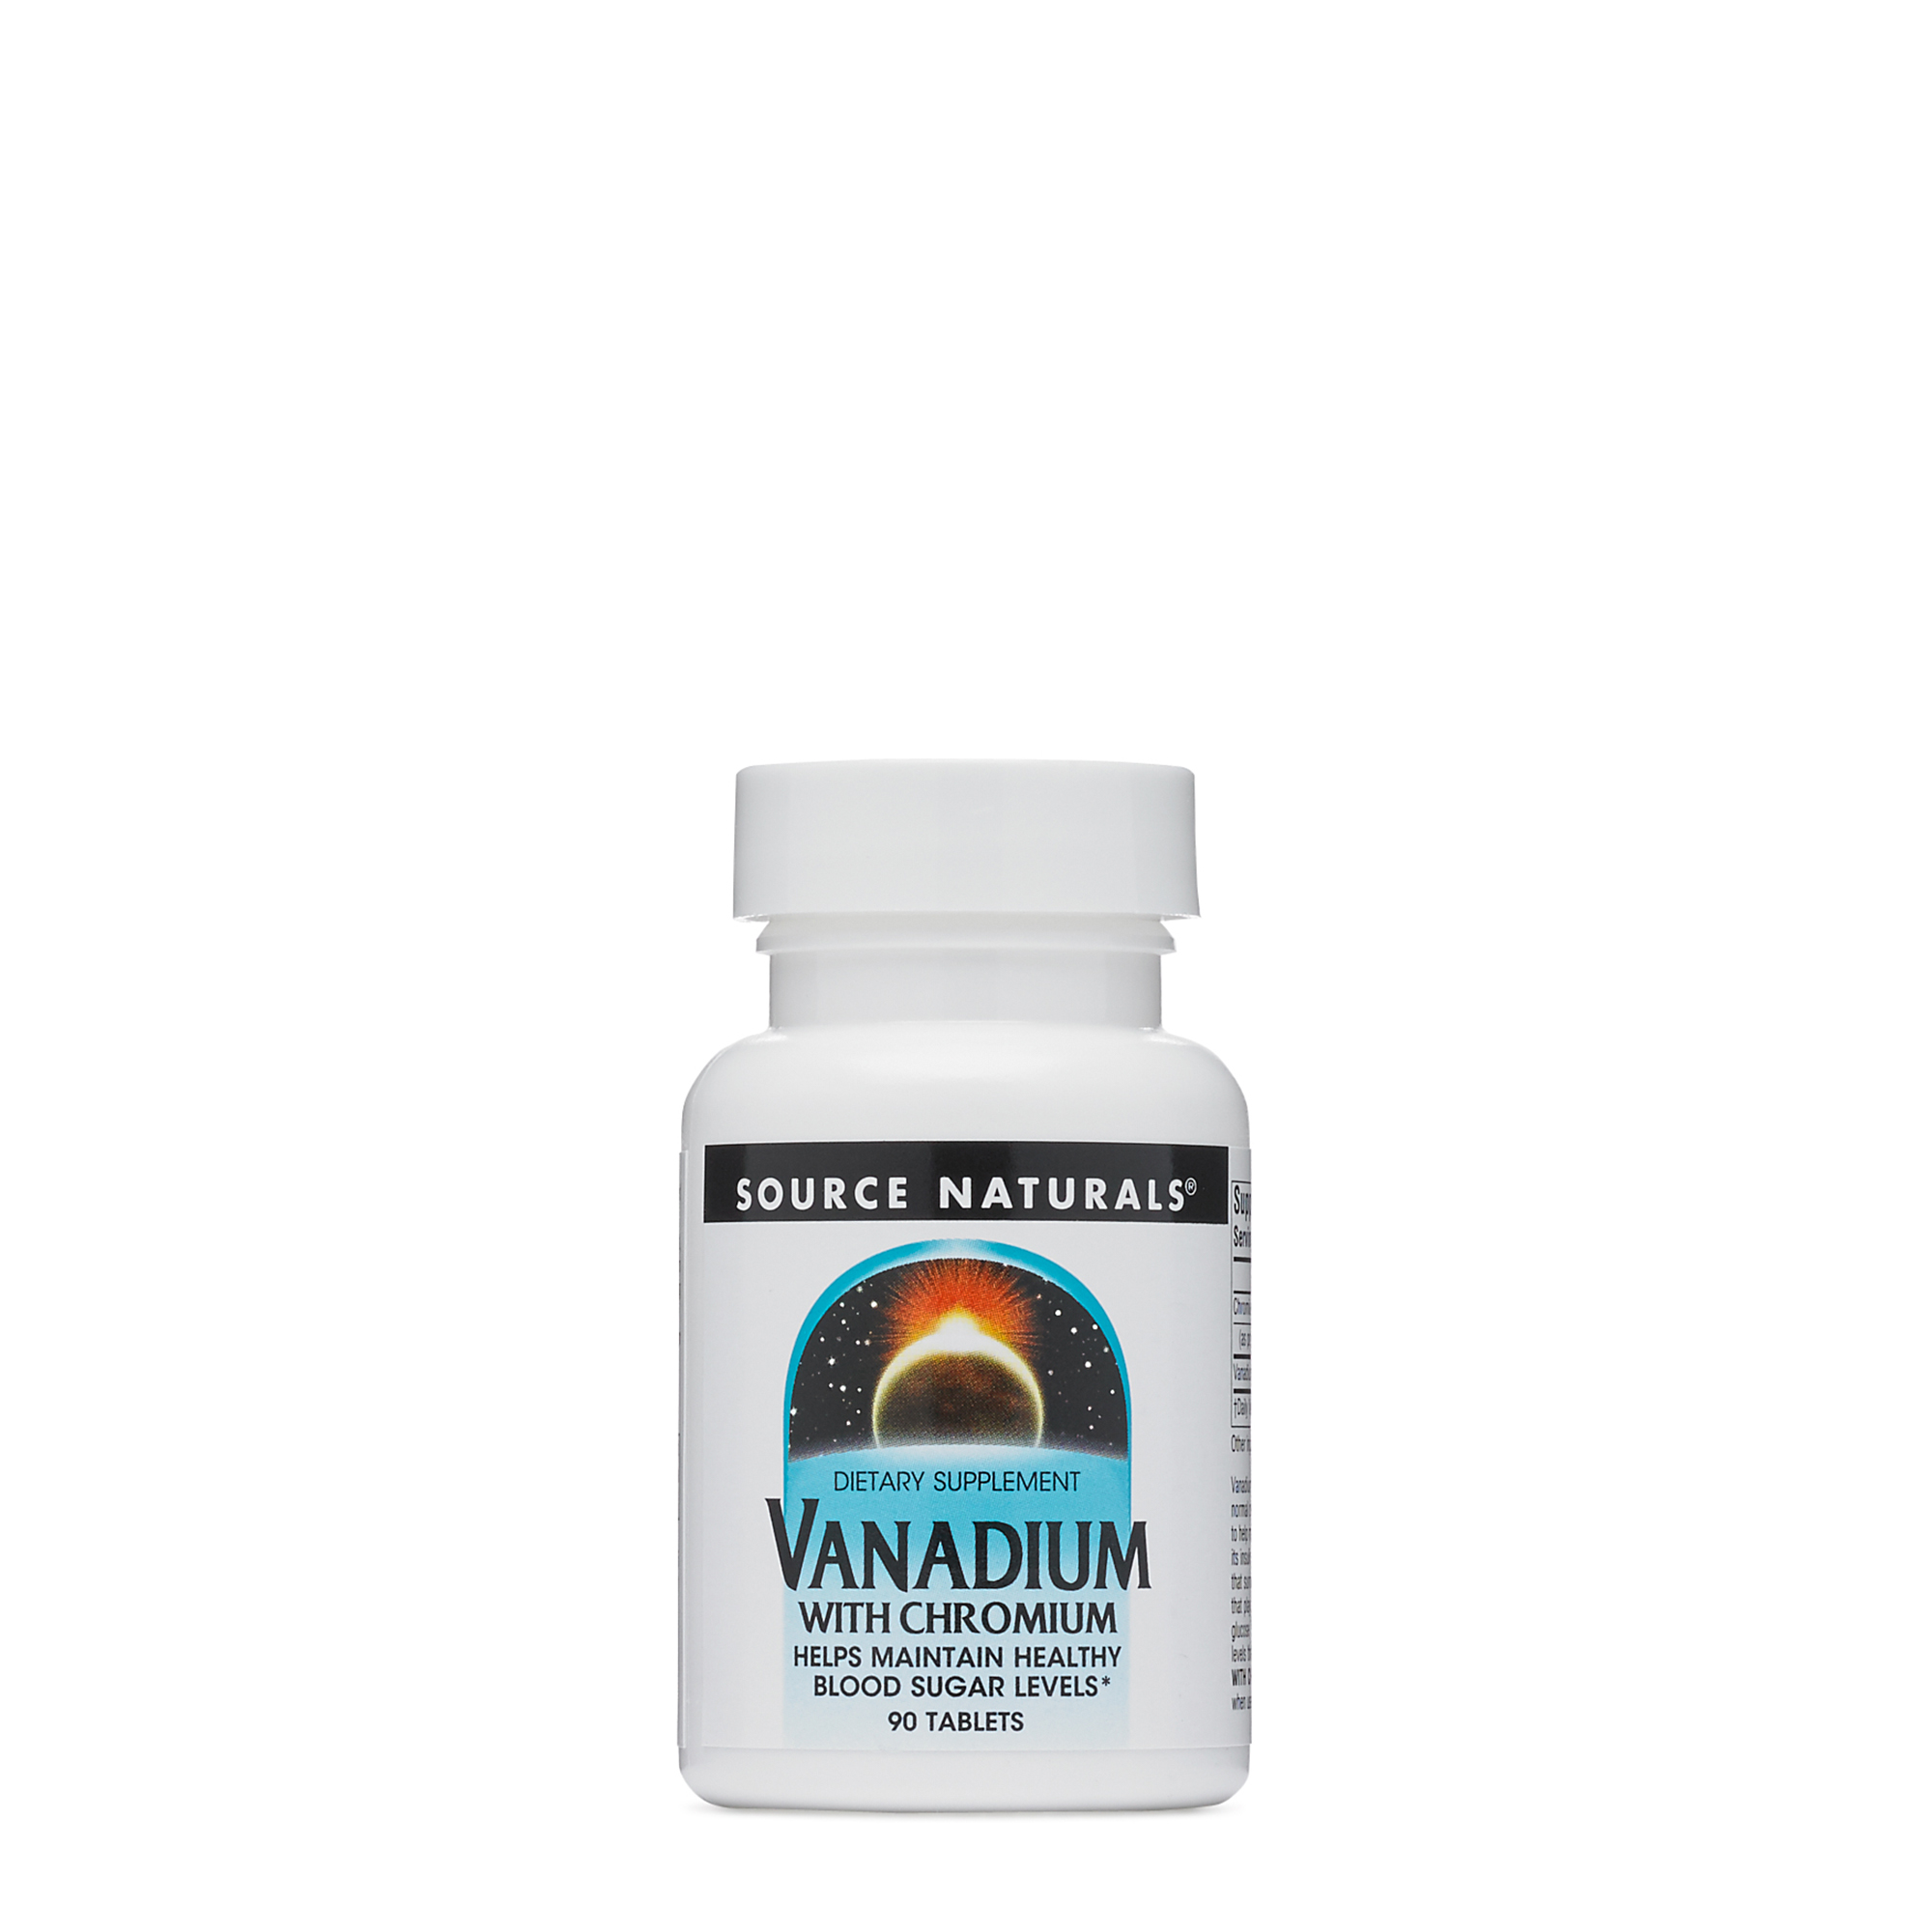 What are vanadium supplements?